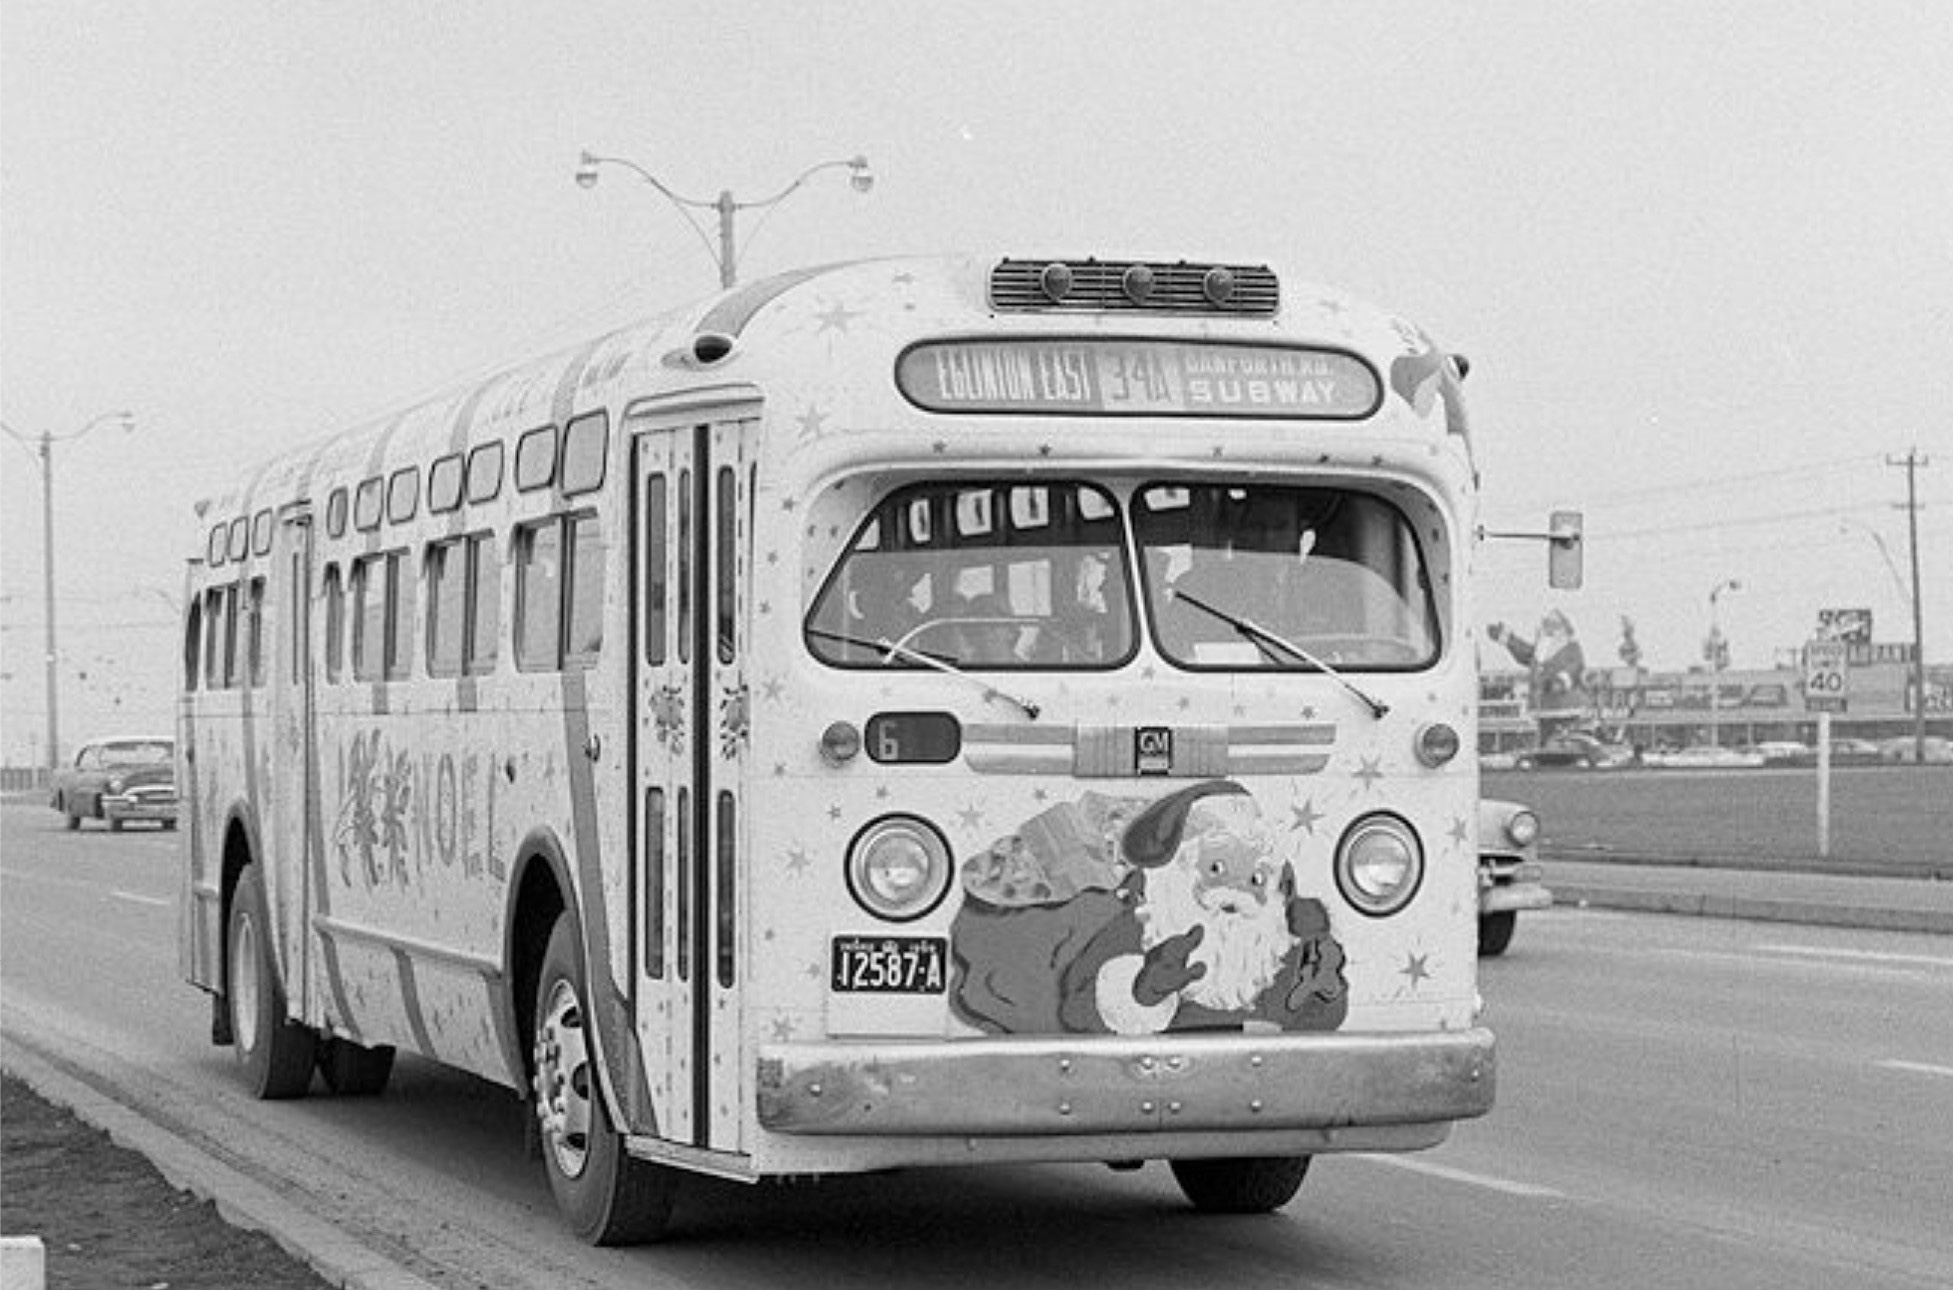 19561200 - Christmas Buses - Eglinton East